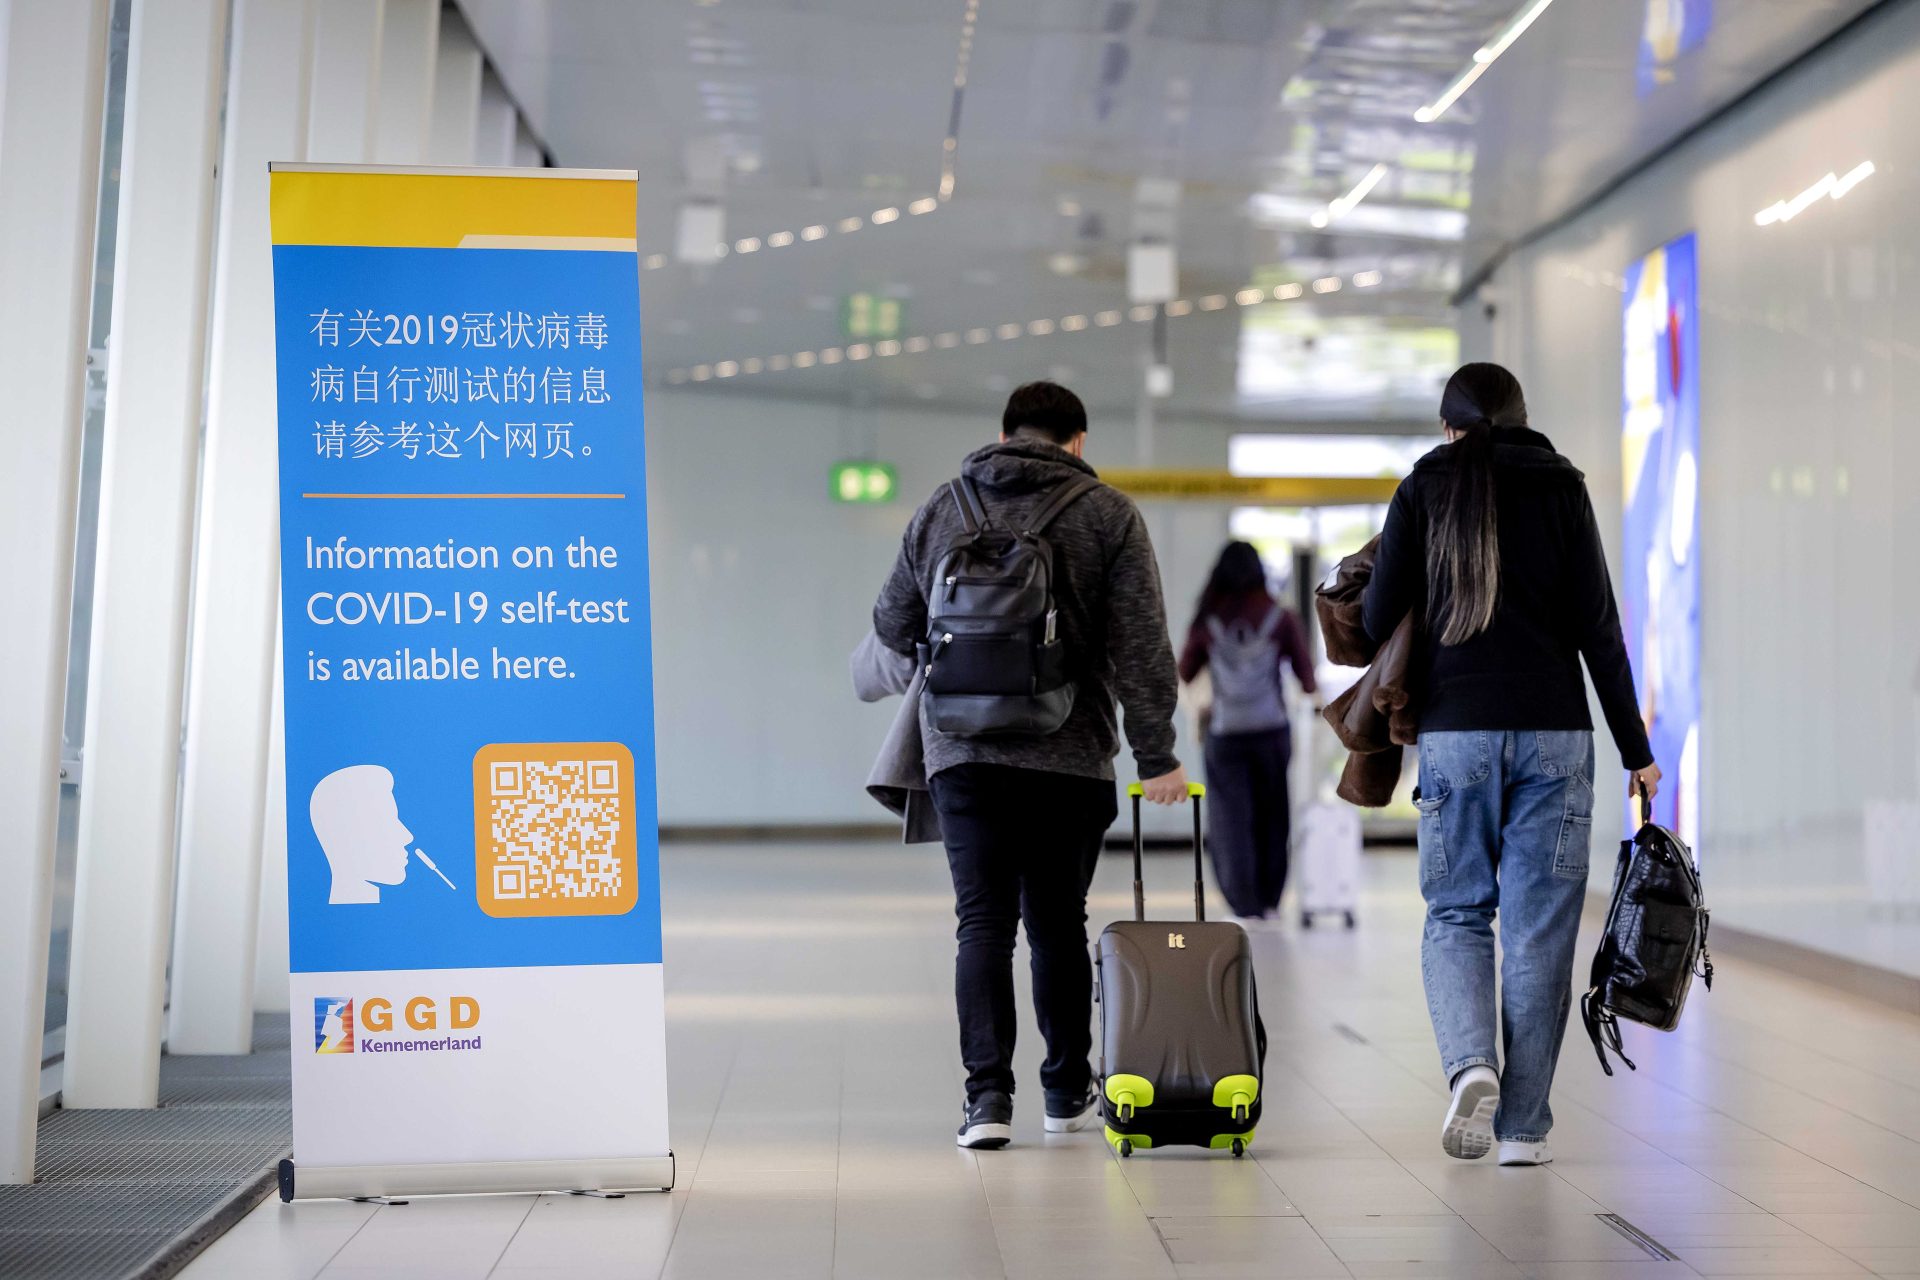 Los viajeros de China pasan frente a una pancarta con información y reciben una autotest gratuita de Covid-19 a su llegada a Schiphol, Países Bajos. La UE recomienda pedir pruebas de covid a los viajeros procedentes de China.